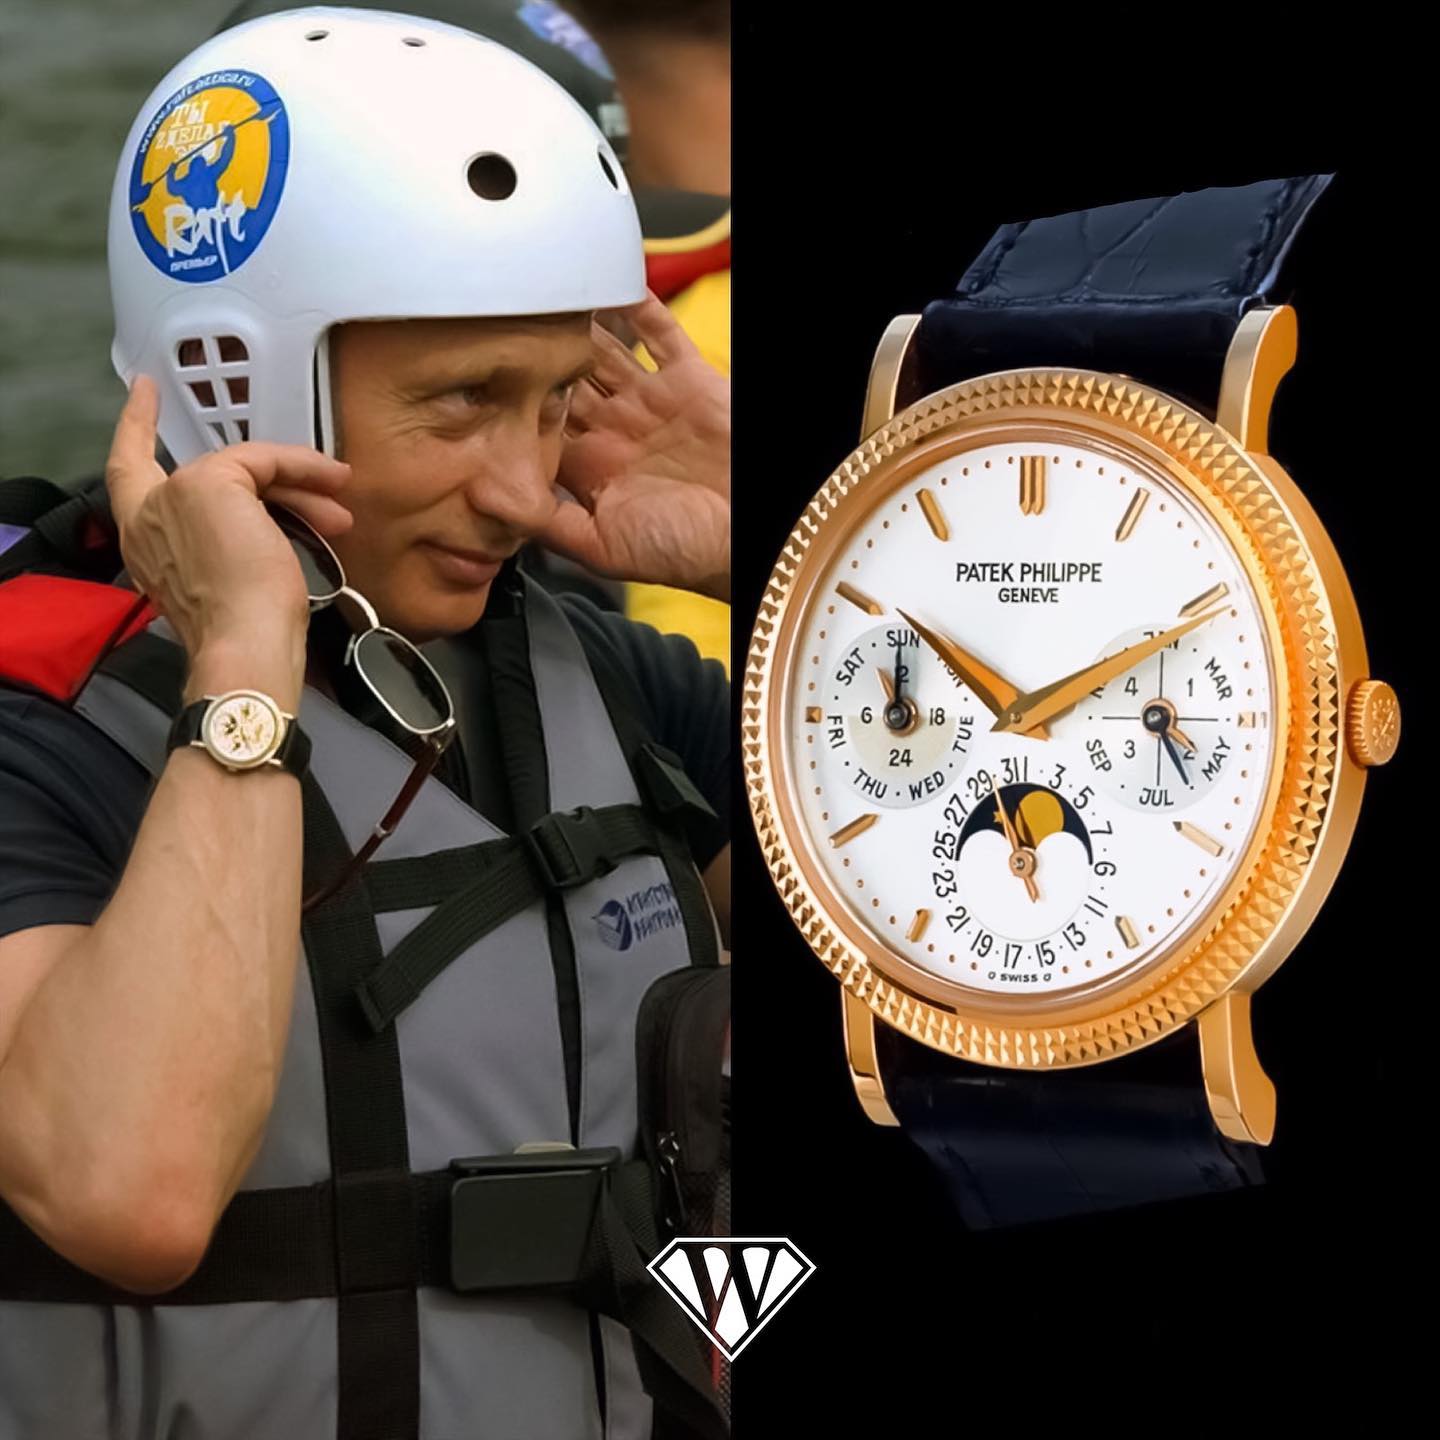 از کیم جونگ اون تا پوتین؛ رهبران جهان چه ساعت‌هایی دست می‌کنند؟/ عکس